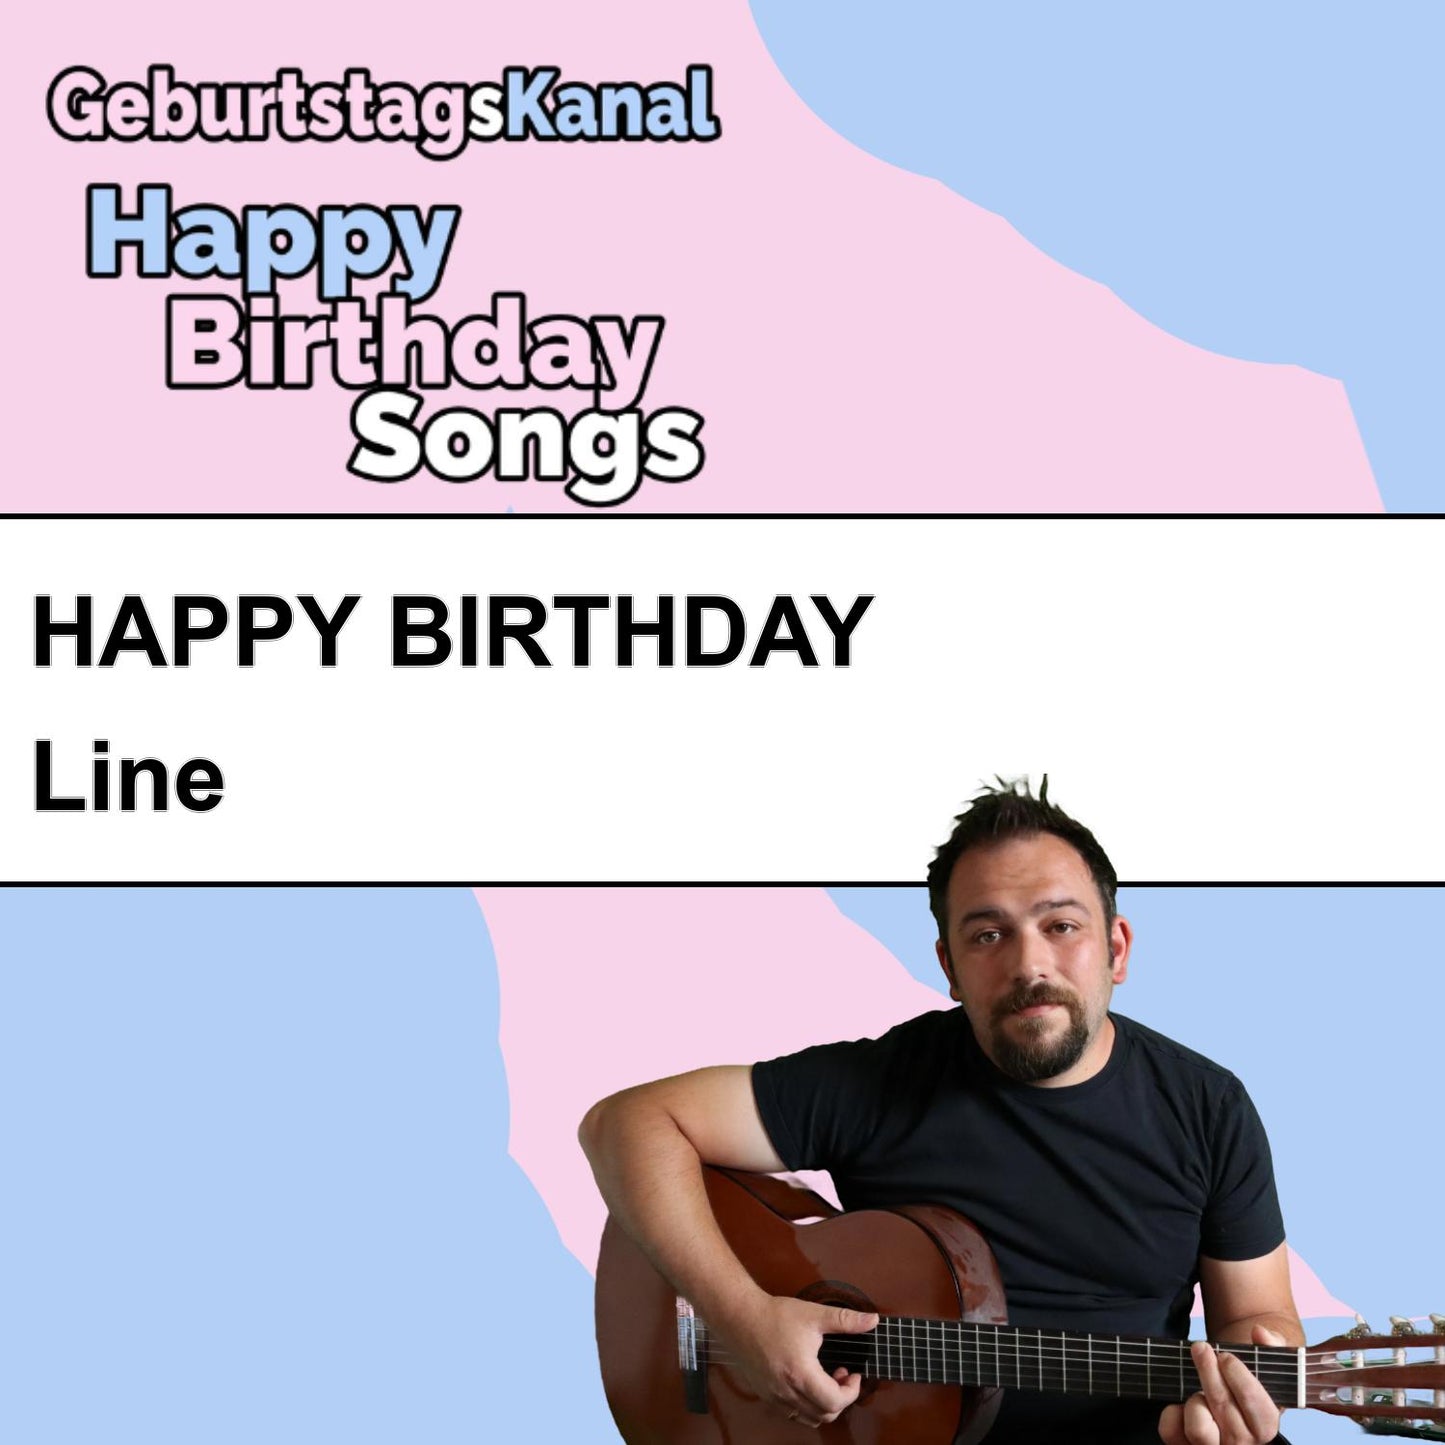 Produktbild Happy Birthday to you Line mit Wunschgrußbotschaft